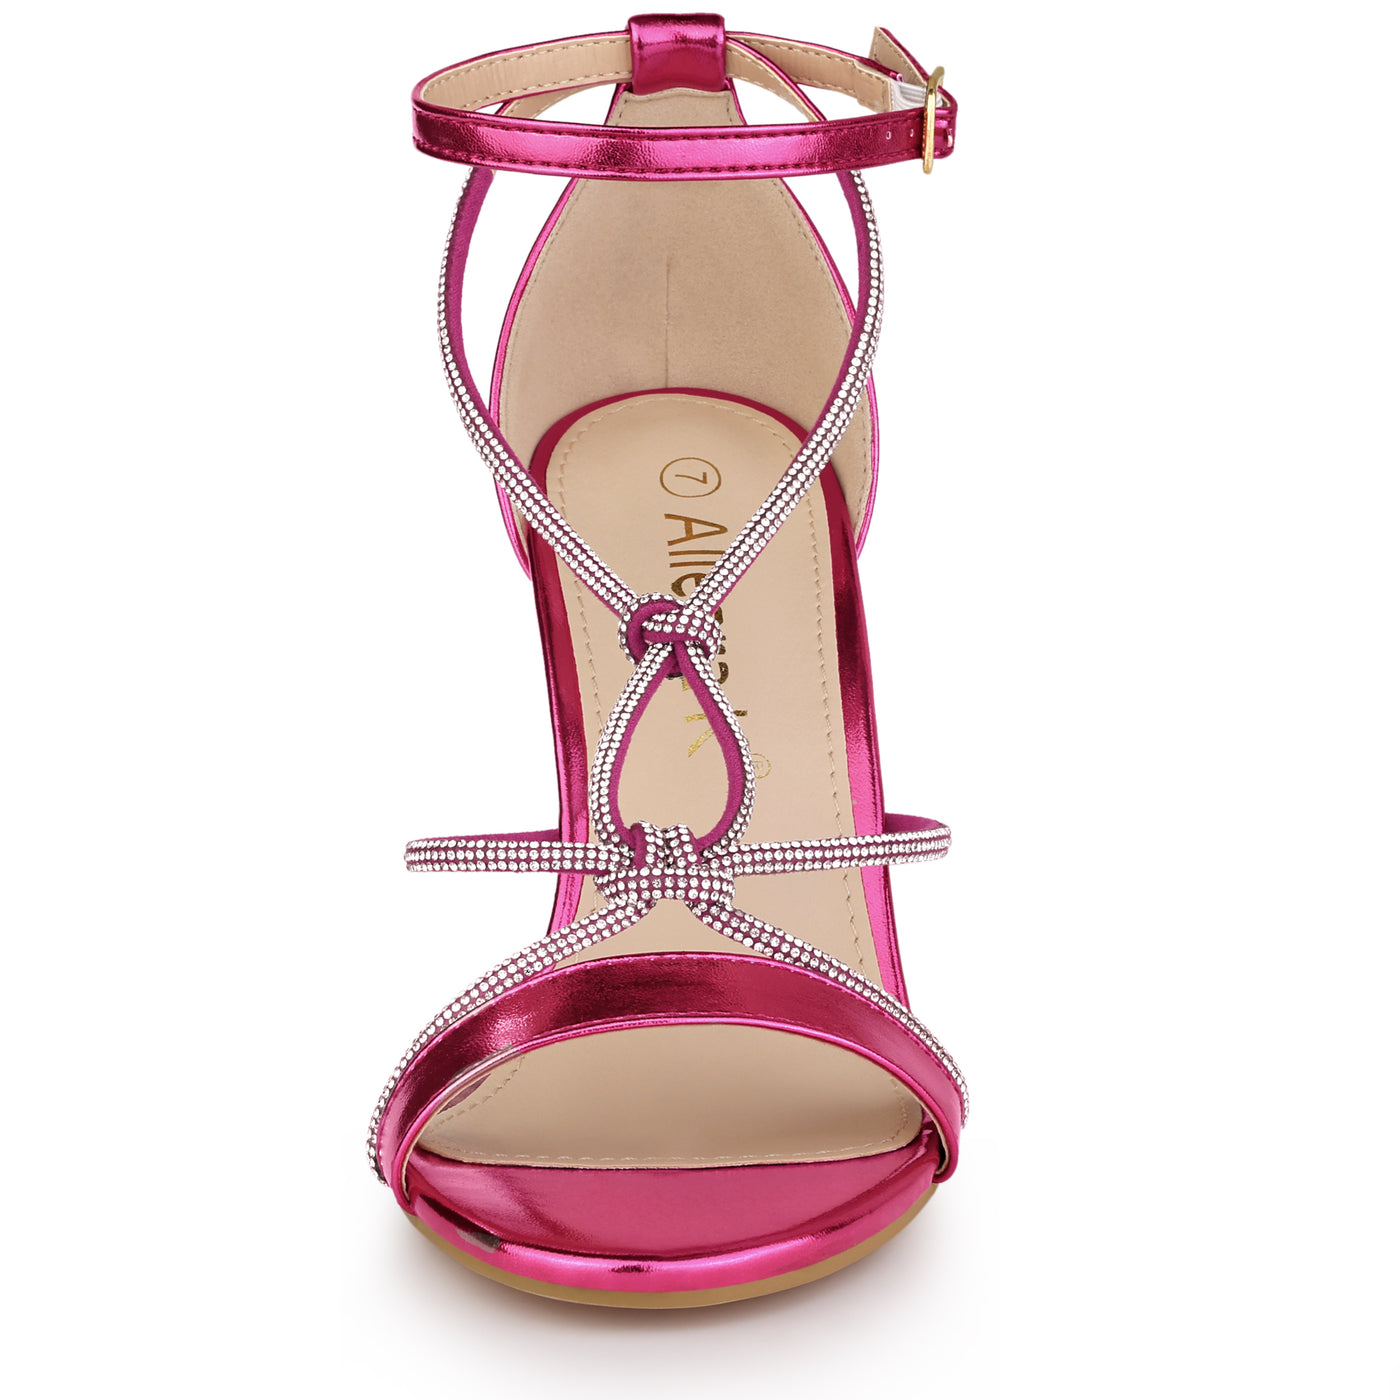 Allegra K Women's Rhinestone Knot Strap Stiletto Heels Sandals